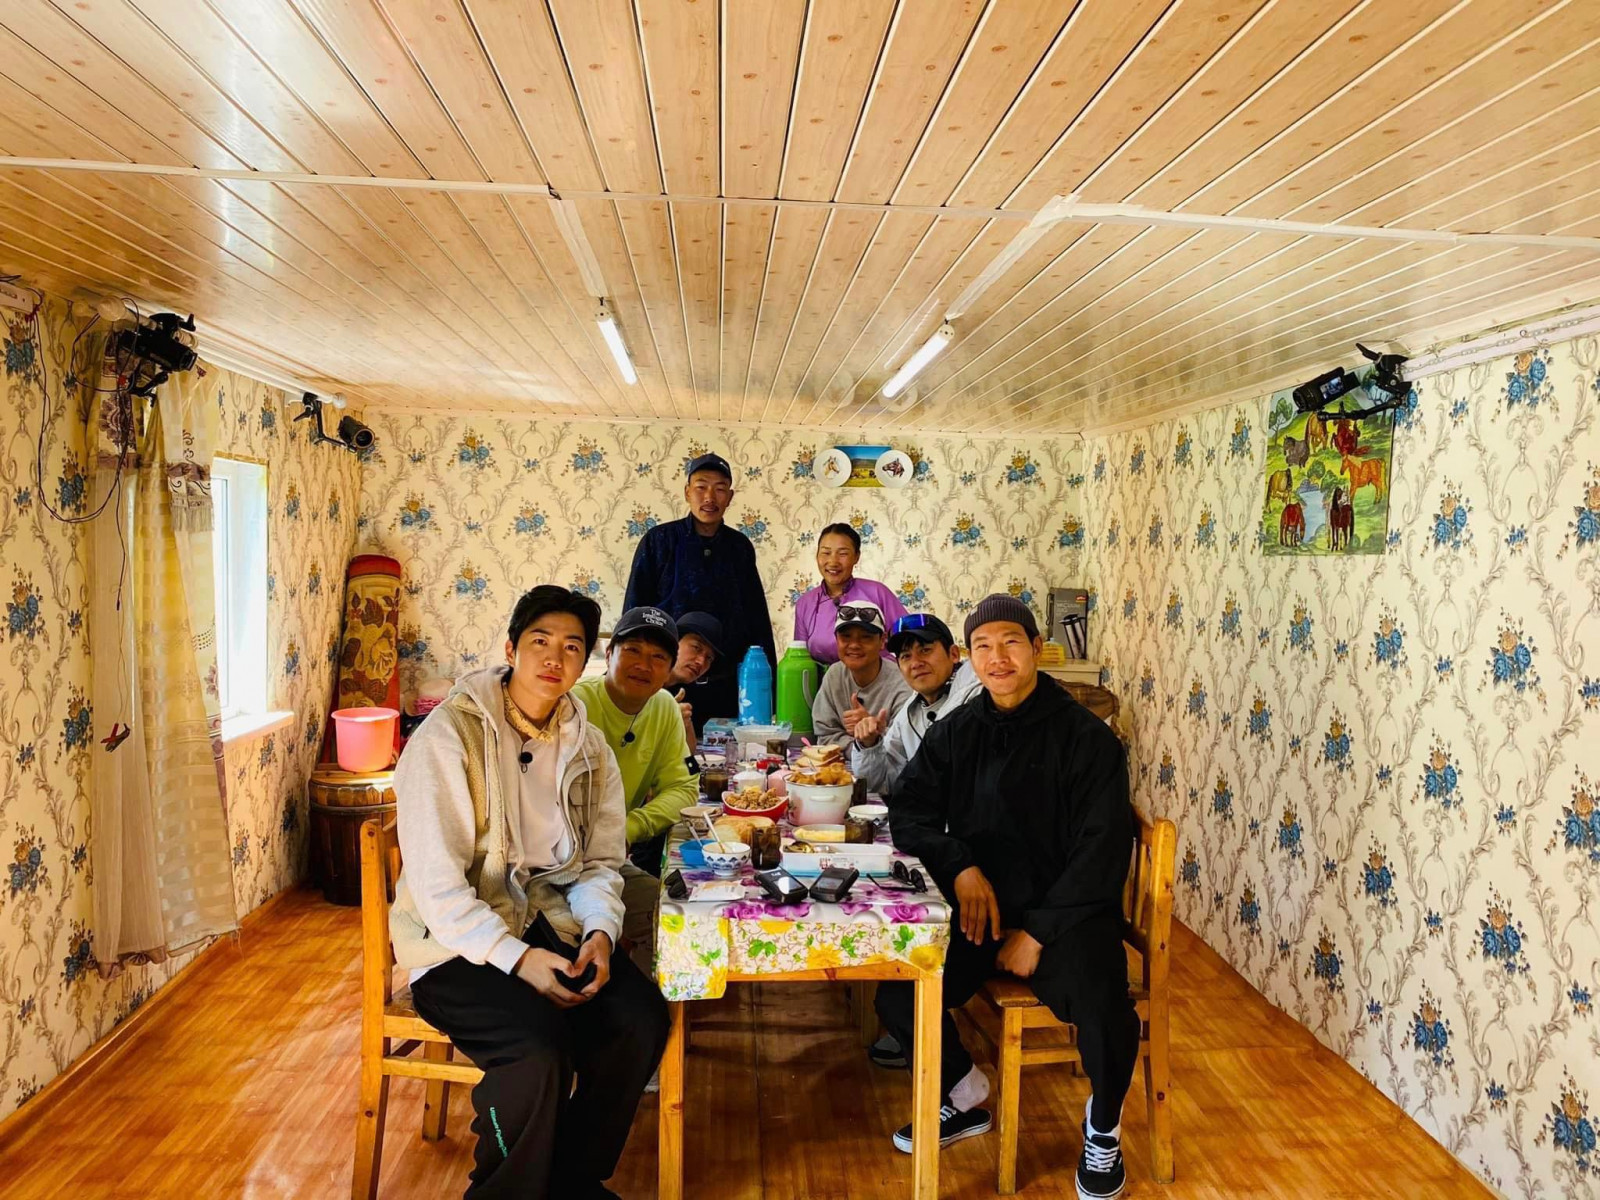 ФОТО: БНСУ-ын алдартнууд Монгол Улсад хэрхэн шууданч хийж буйг харуулсан "Couriers in Mongolia" нэвтрүүлгийн багийнхан Ховд аймагт очжээ